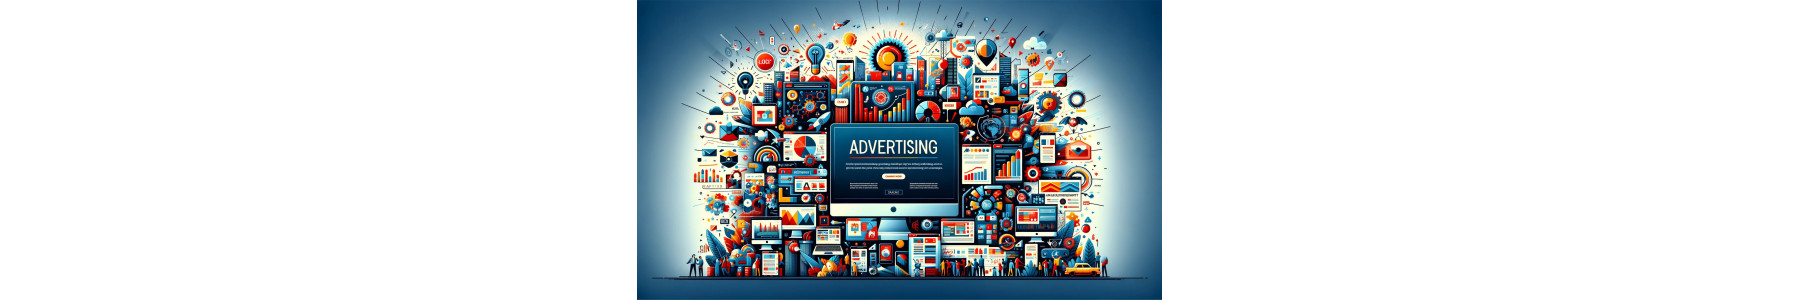 Servizi di Advertising e Marketing Online | Webbin24.com